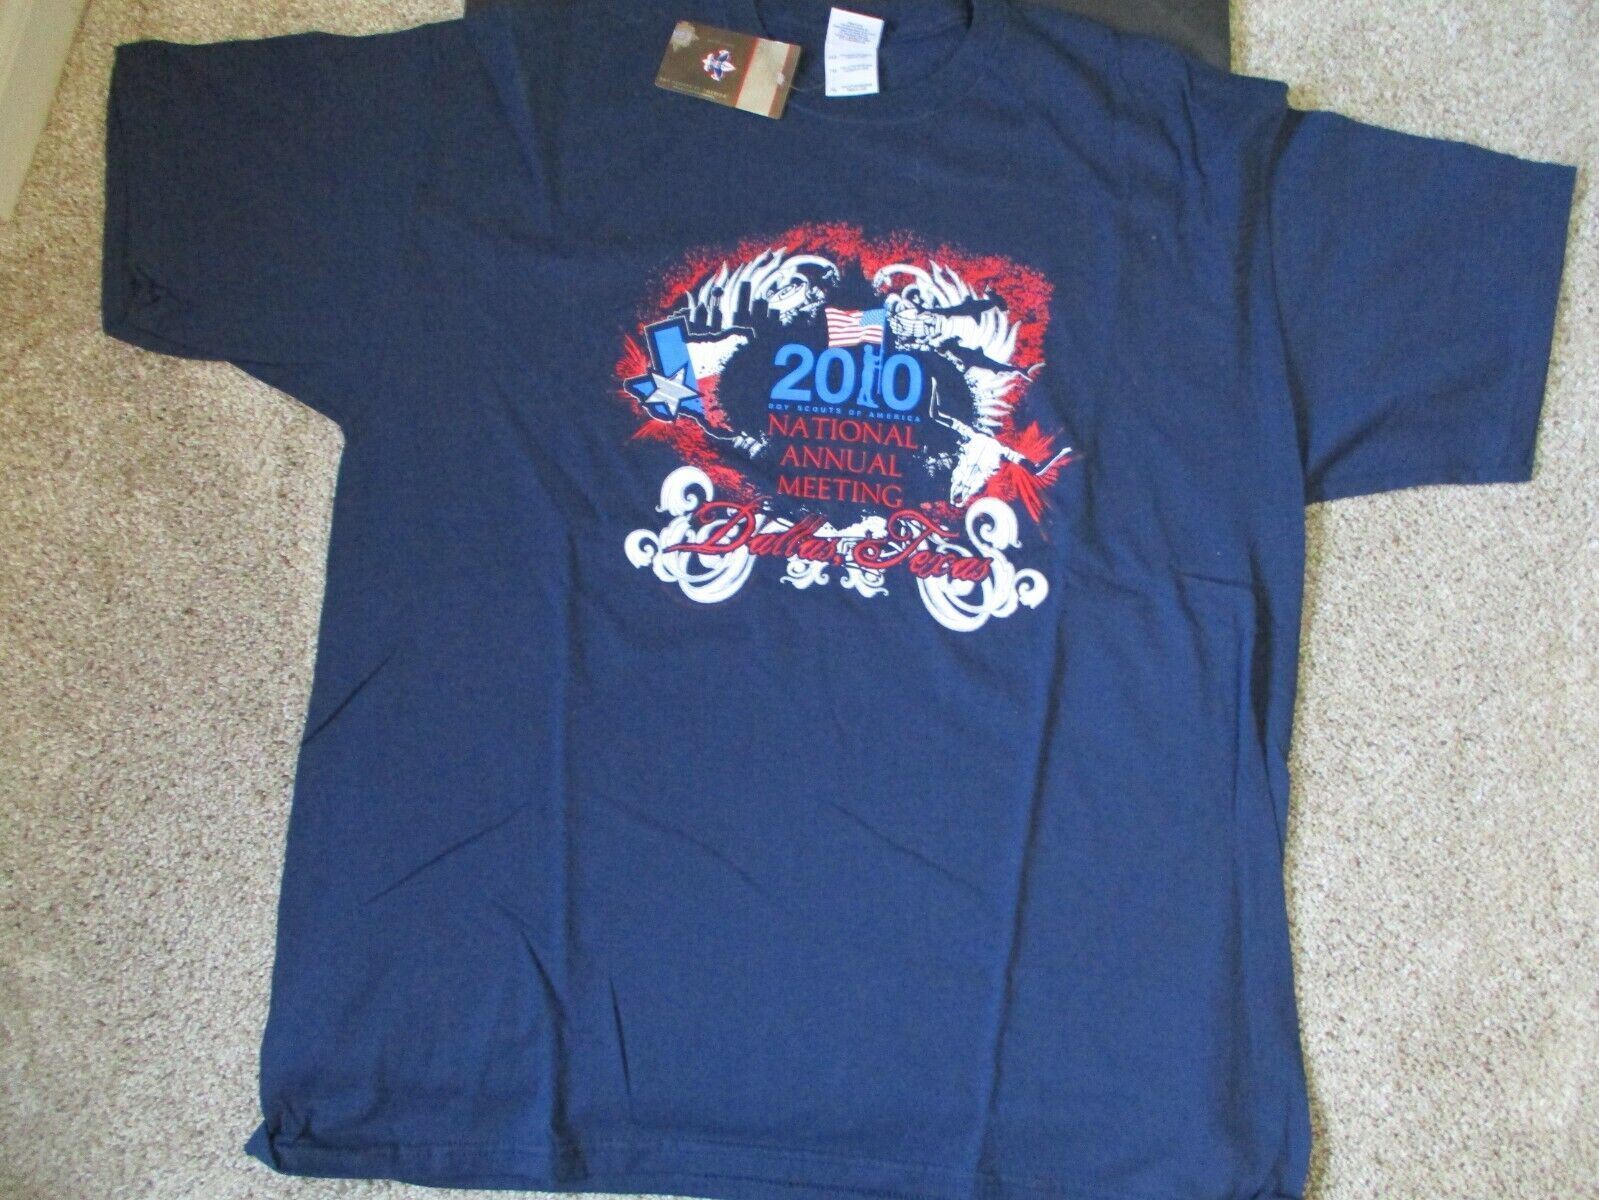 2010 National Annual Meeting BSA boy scout men's XL t-shirt